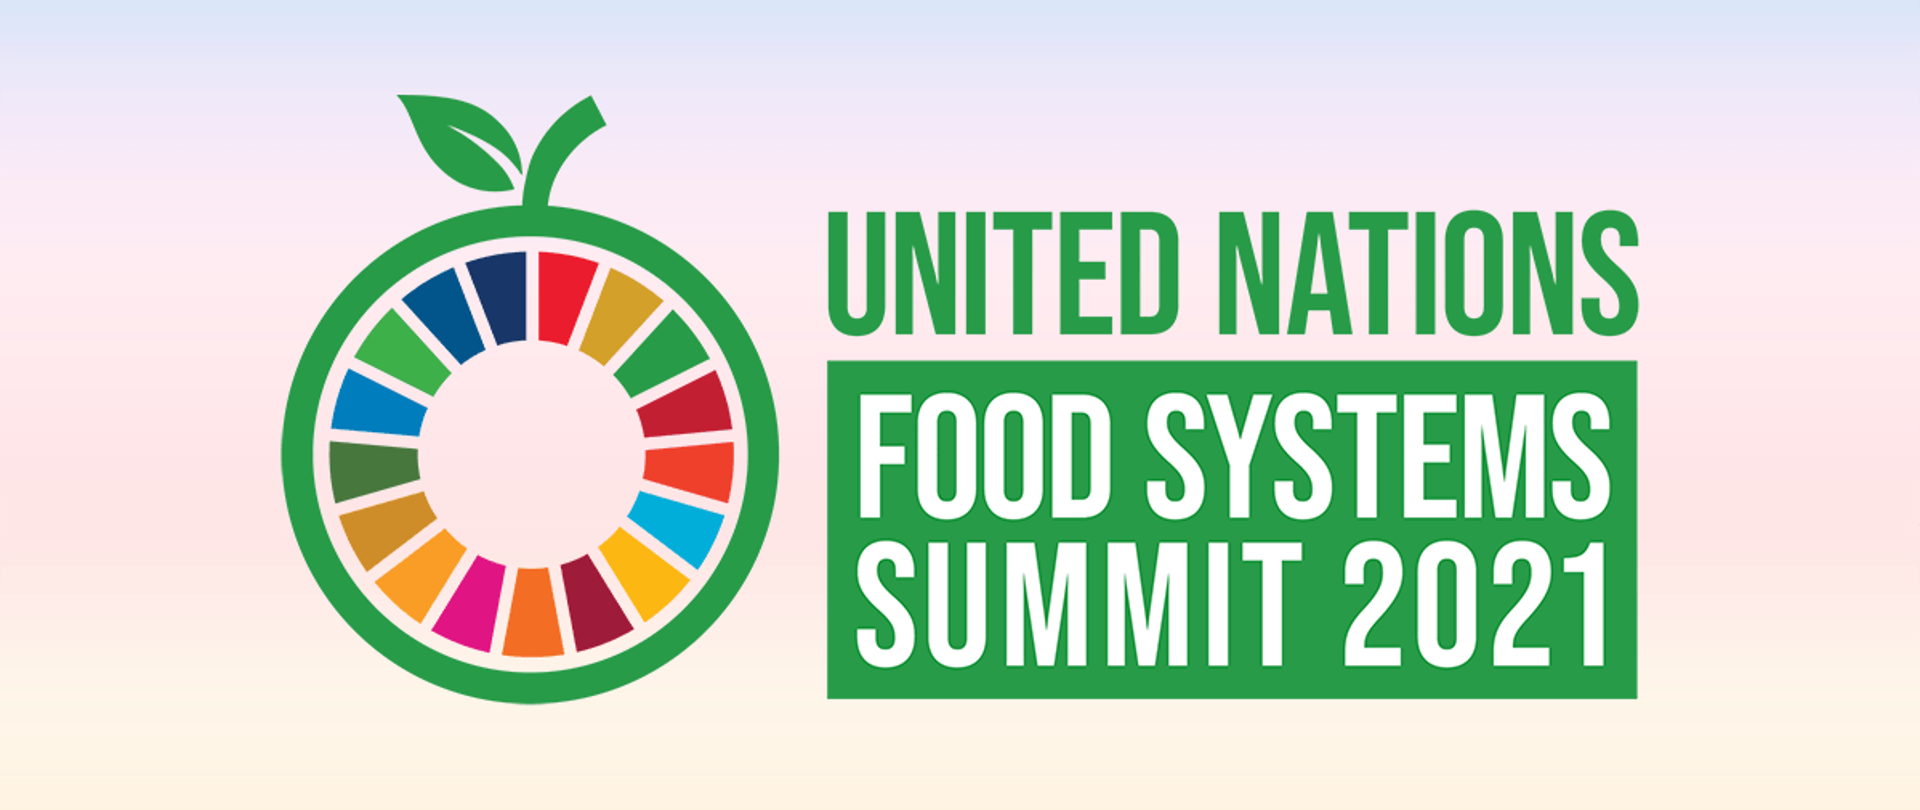 Graficzne symbol jabłka, w którym w środku znajdują się kolorowe kawałki wypełniające przestrzeń jabłka. Obok napis: United Nations Food Systems Summit 2021